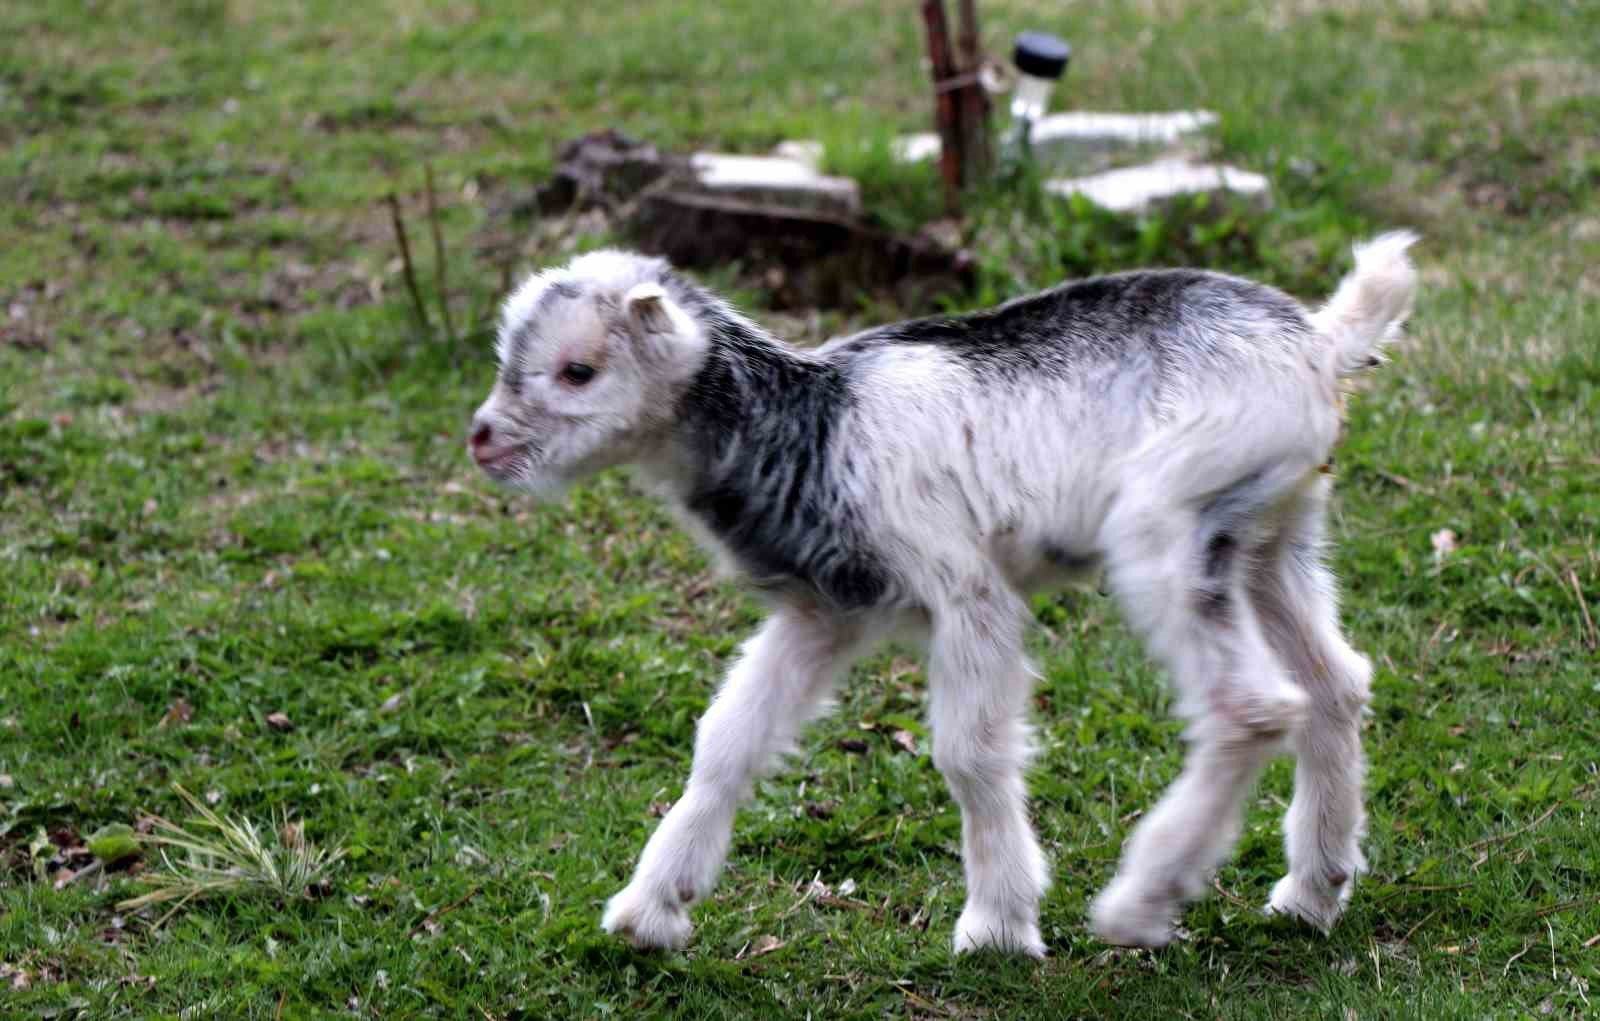 Annesini ayı yiyen ve ölmekten gazeteci tarafından kurtarılan keçi yavrusu büyüdü
